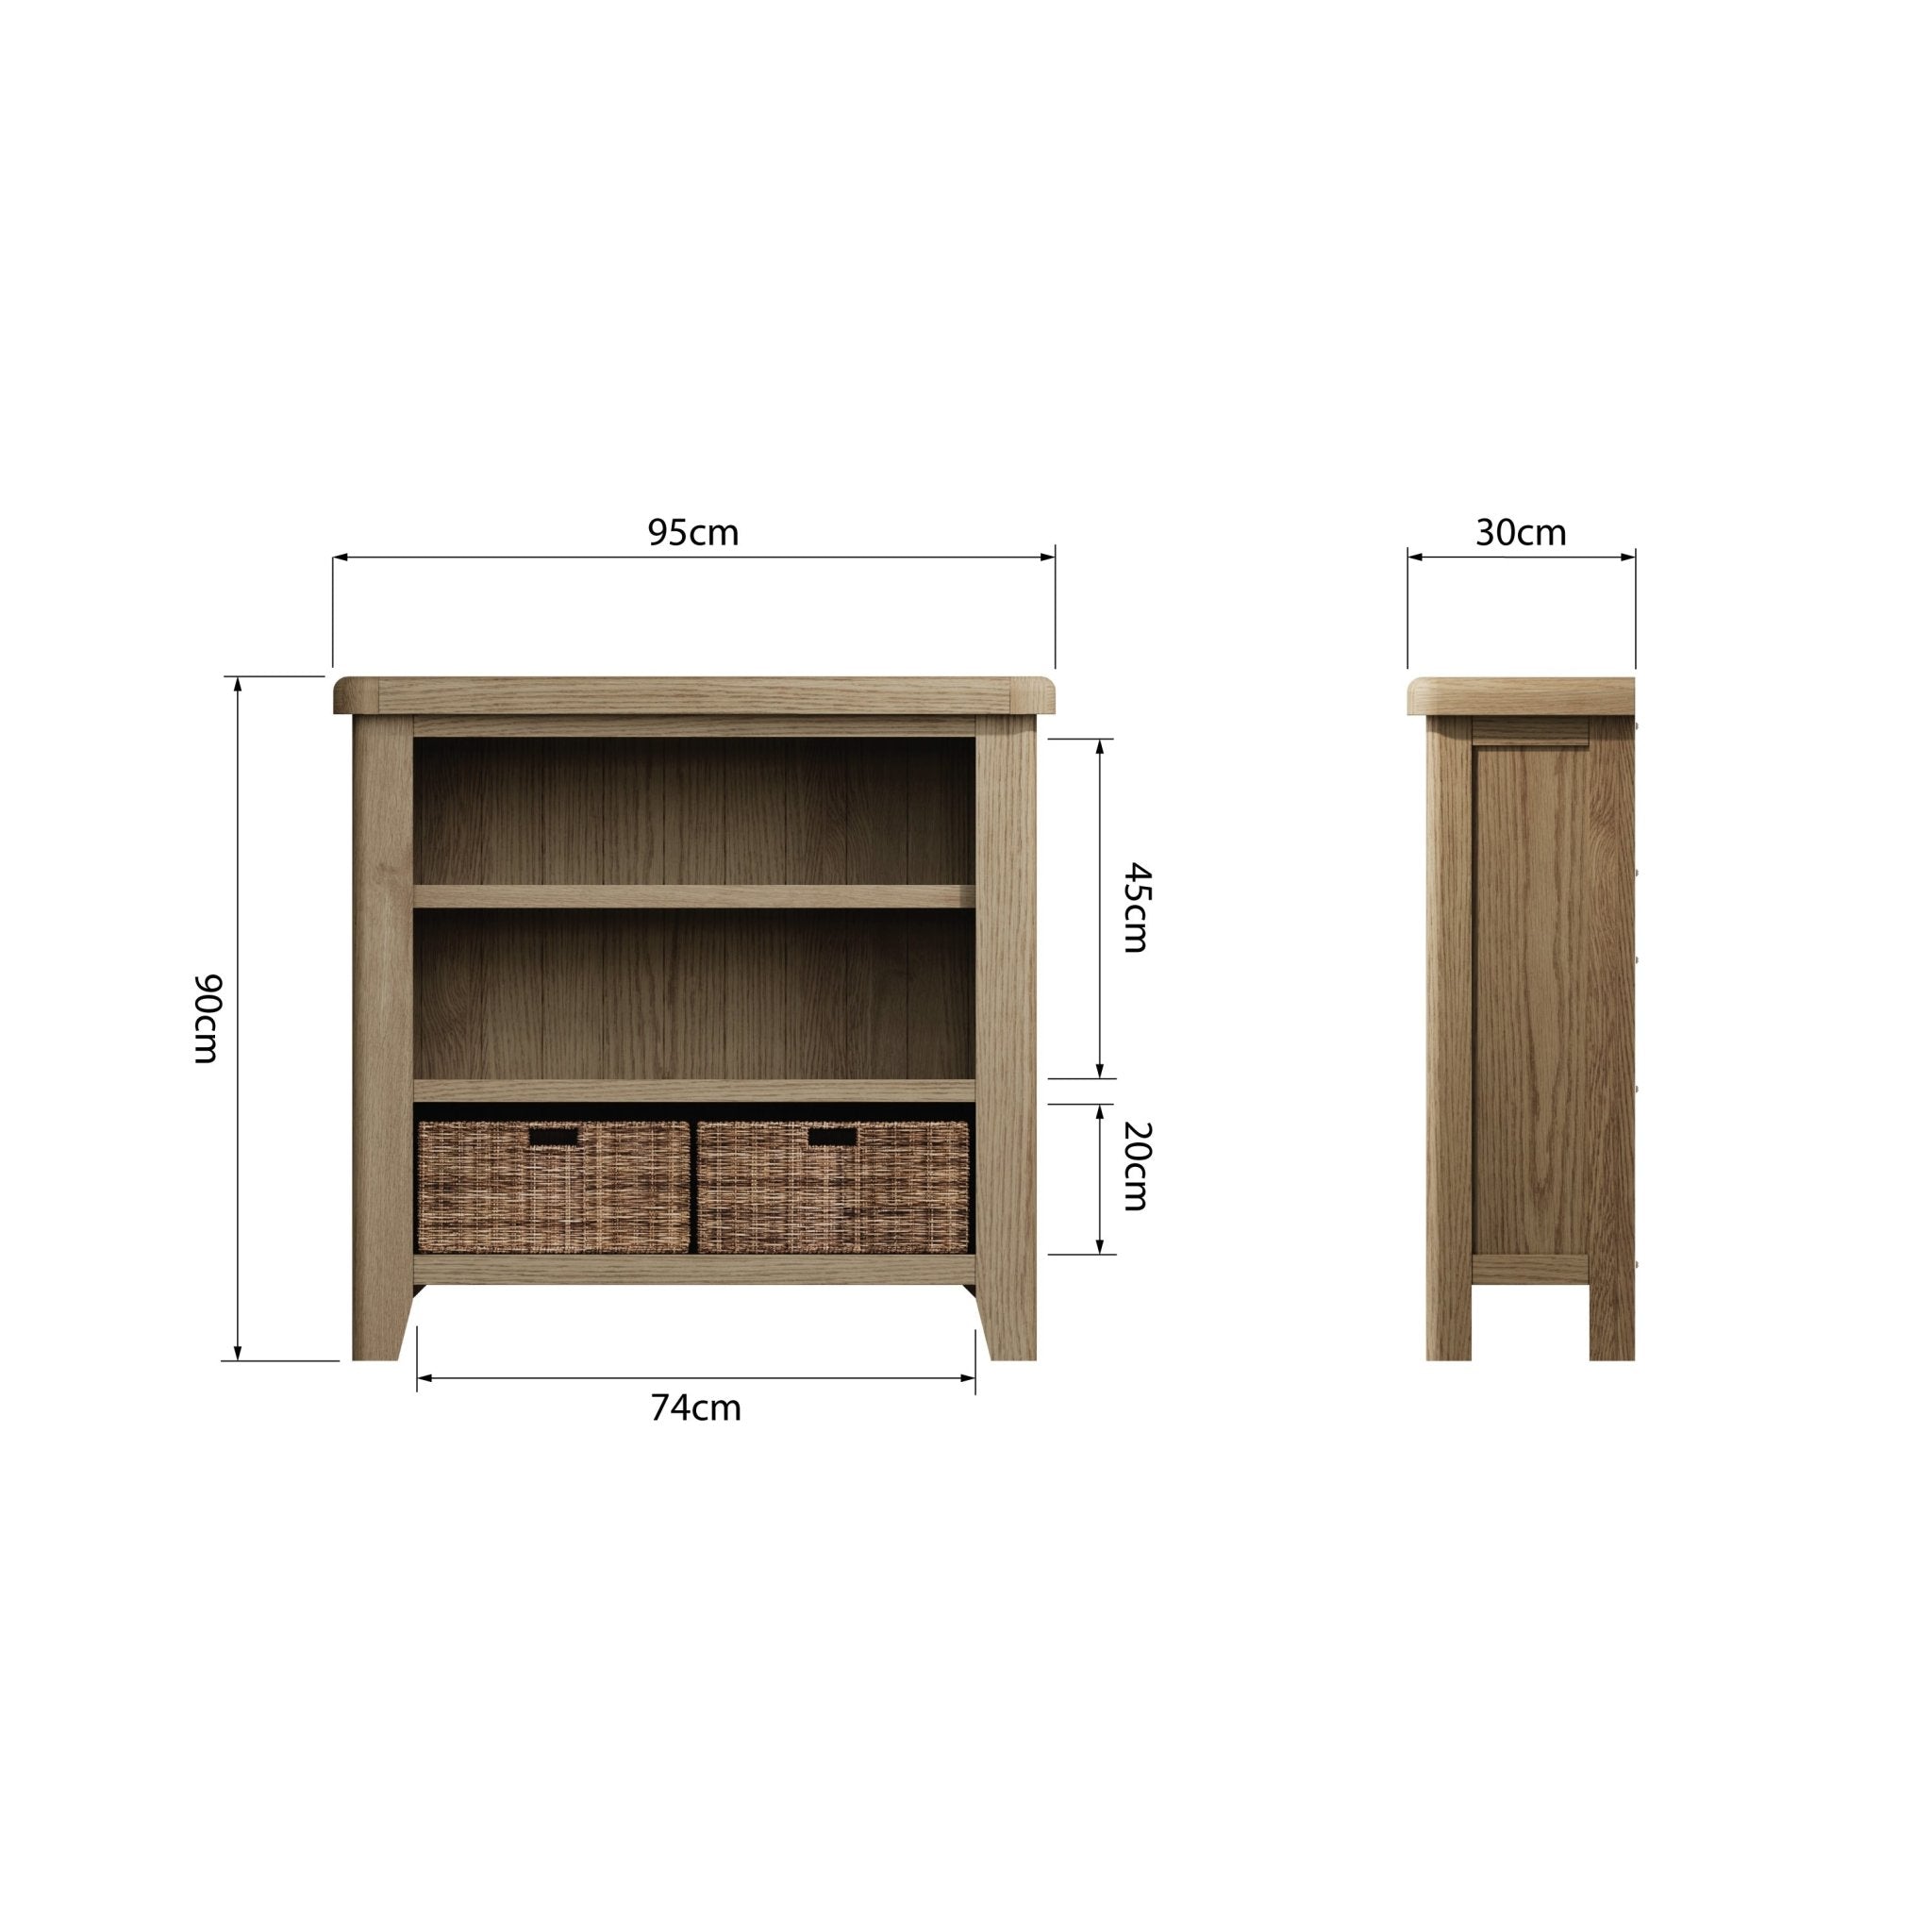 Rusper Oak Small Bookcase with Baskets - Duck Barn Interiors